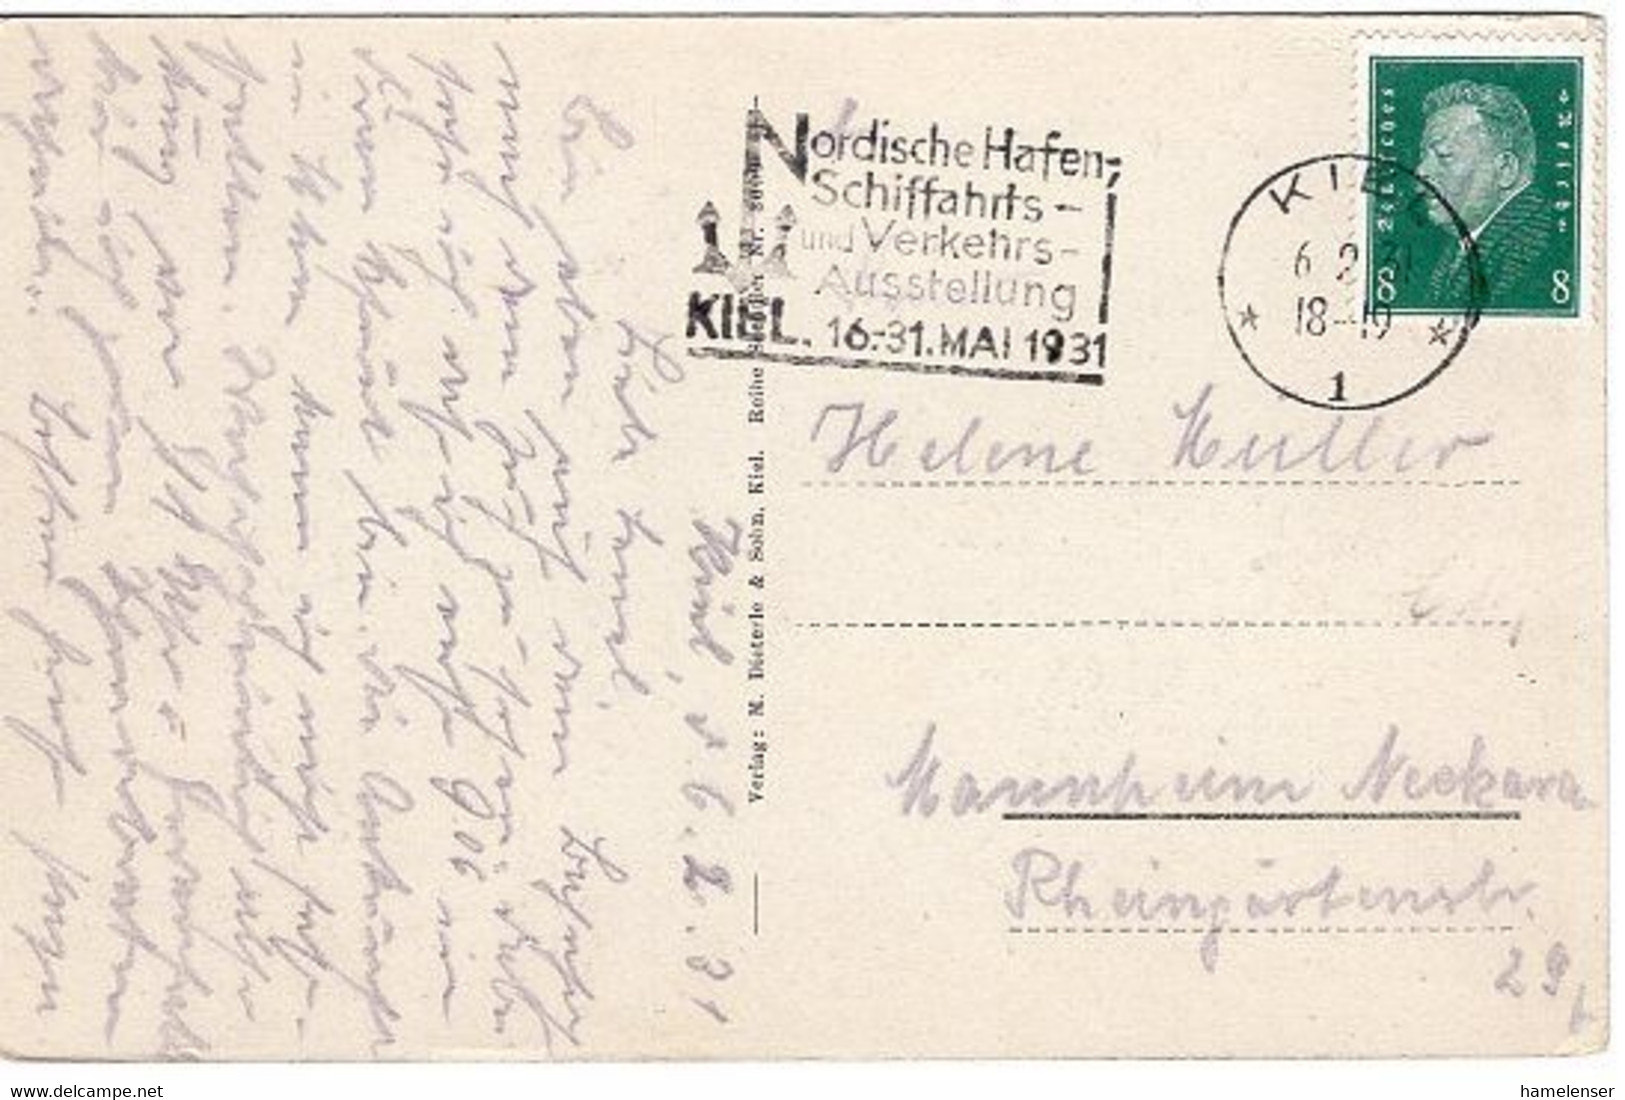 51687 - Deutsches Reich - 1931 - 8Pfg. Ebert EF A AnsKte KIEL - NORDISCHE ..., SCHIFFAHRTS- ... AUSSTELLUNG -> Mannheim - Maritime